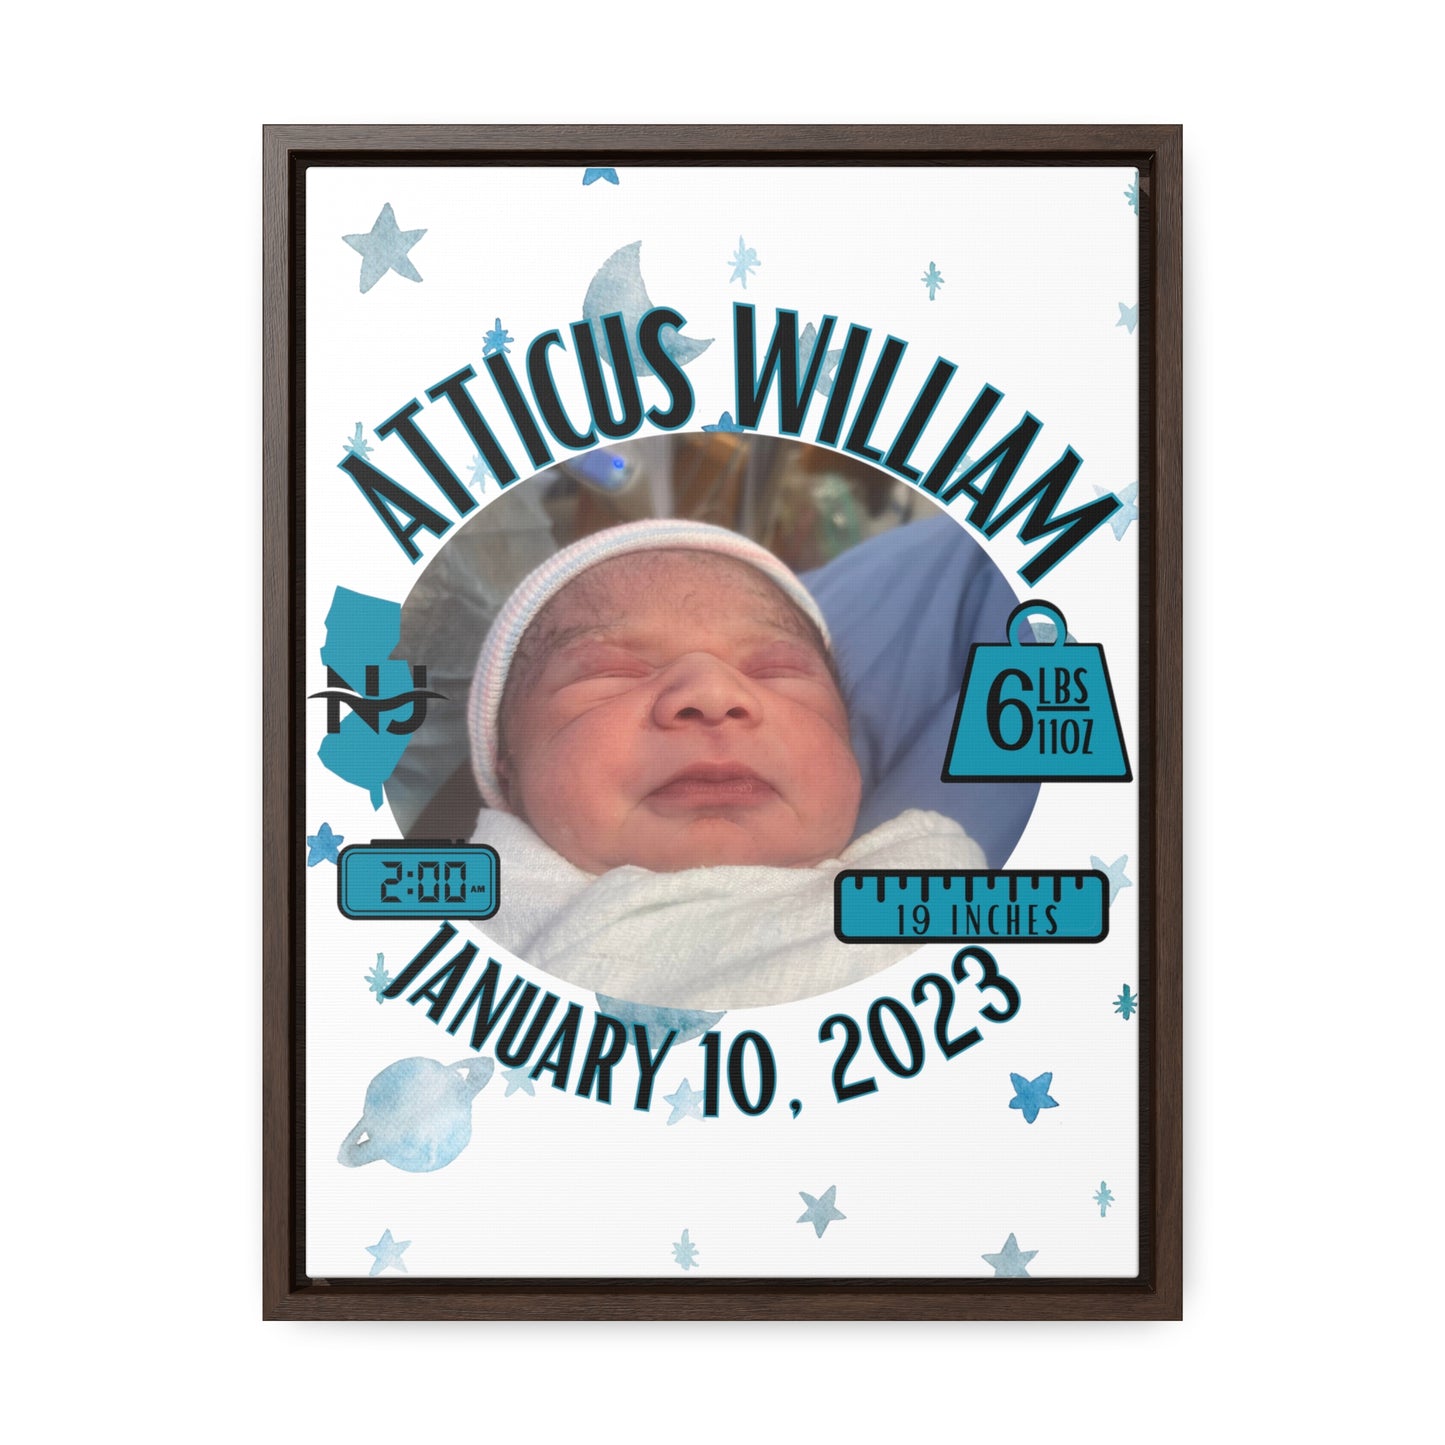 Atticus William Canvas Wrap